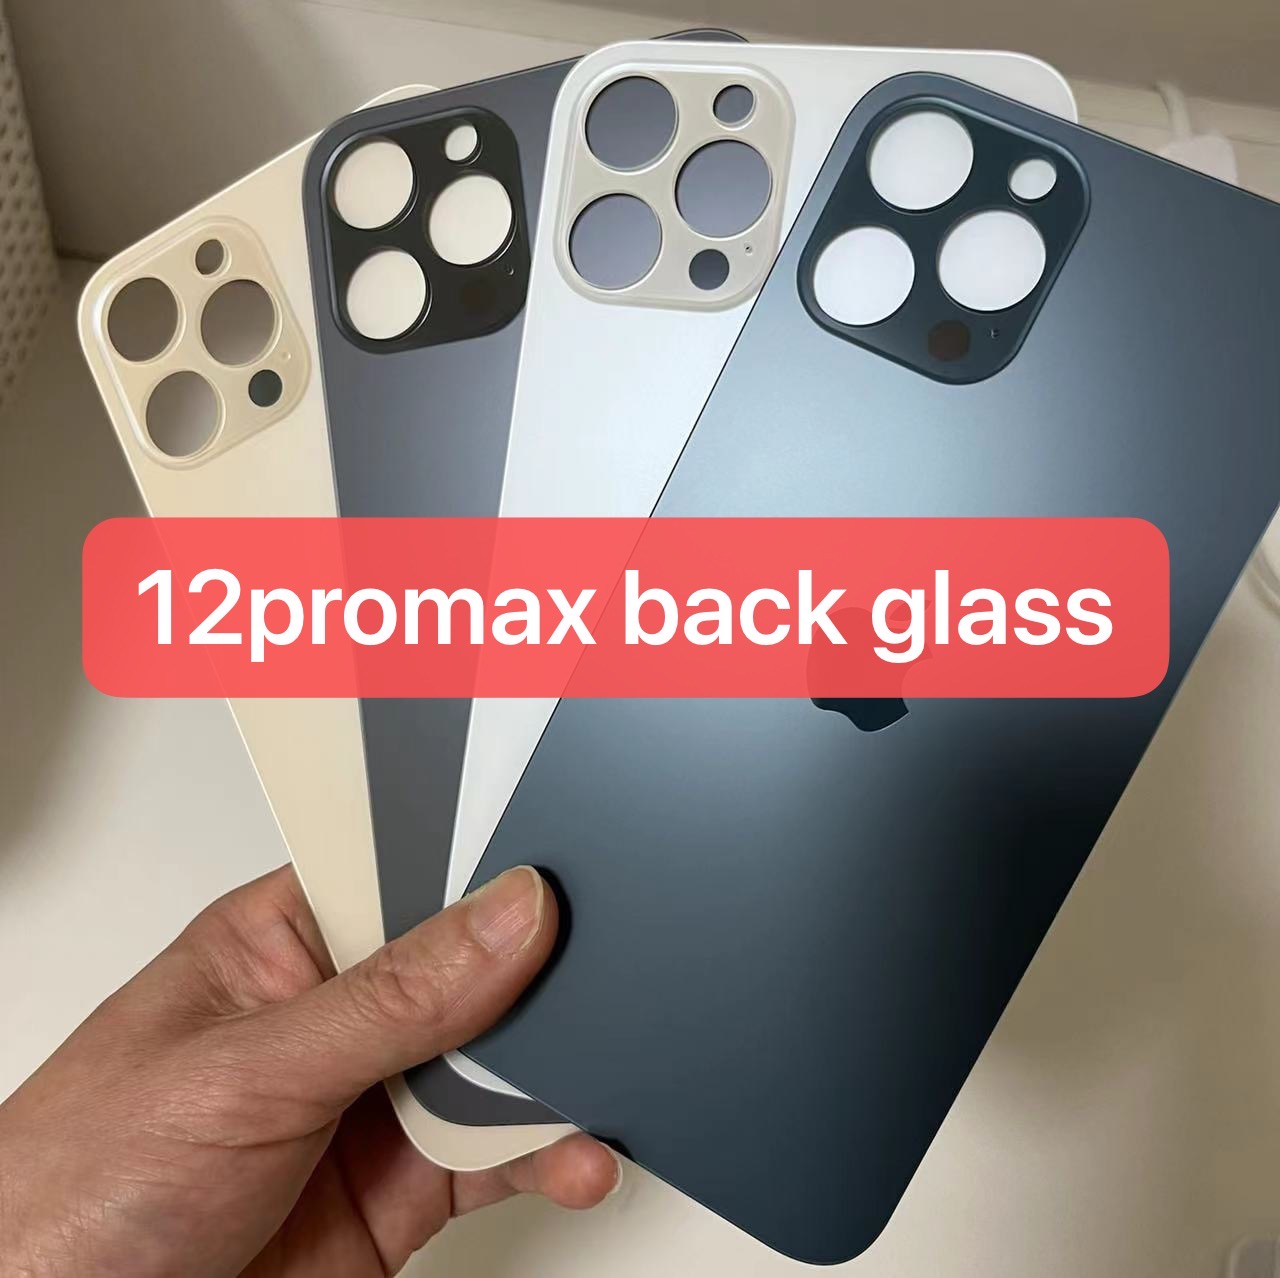 Tiètement de verre arrière de qualité OEM pour iPhone 12 Pro Max 12 12mini 12pro 12promax mini boîtier de couvercle arrière avec autocollant